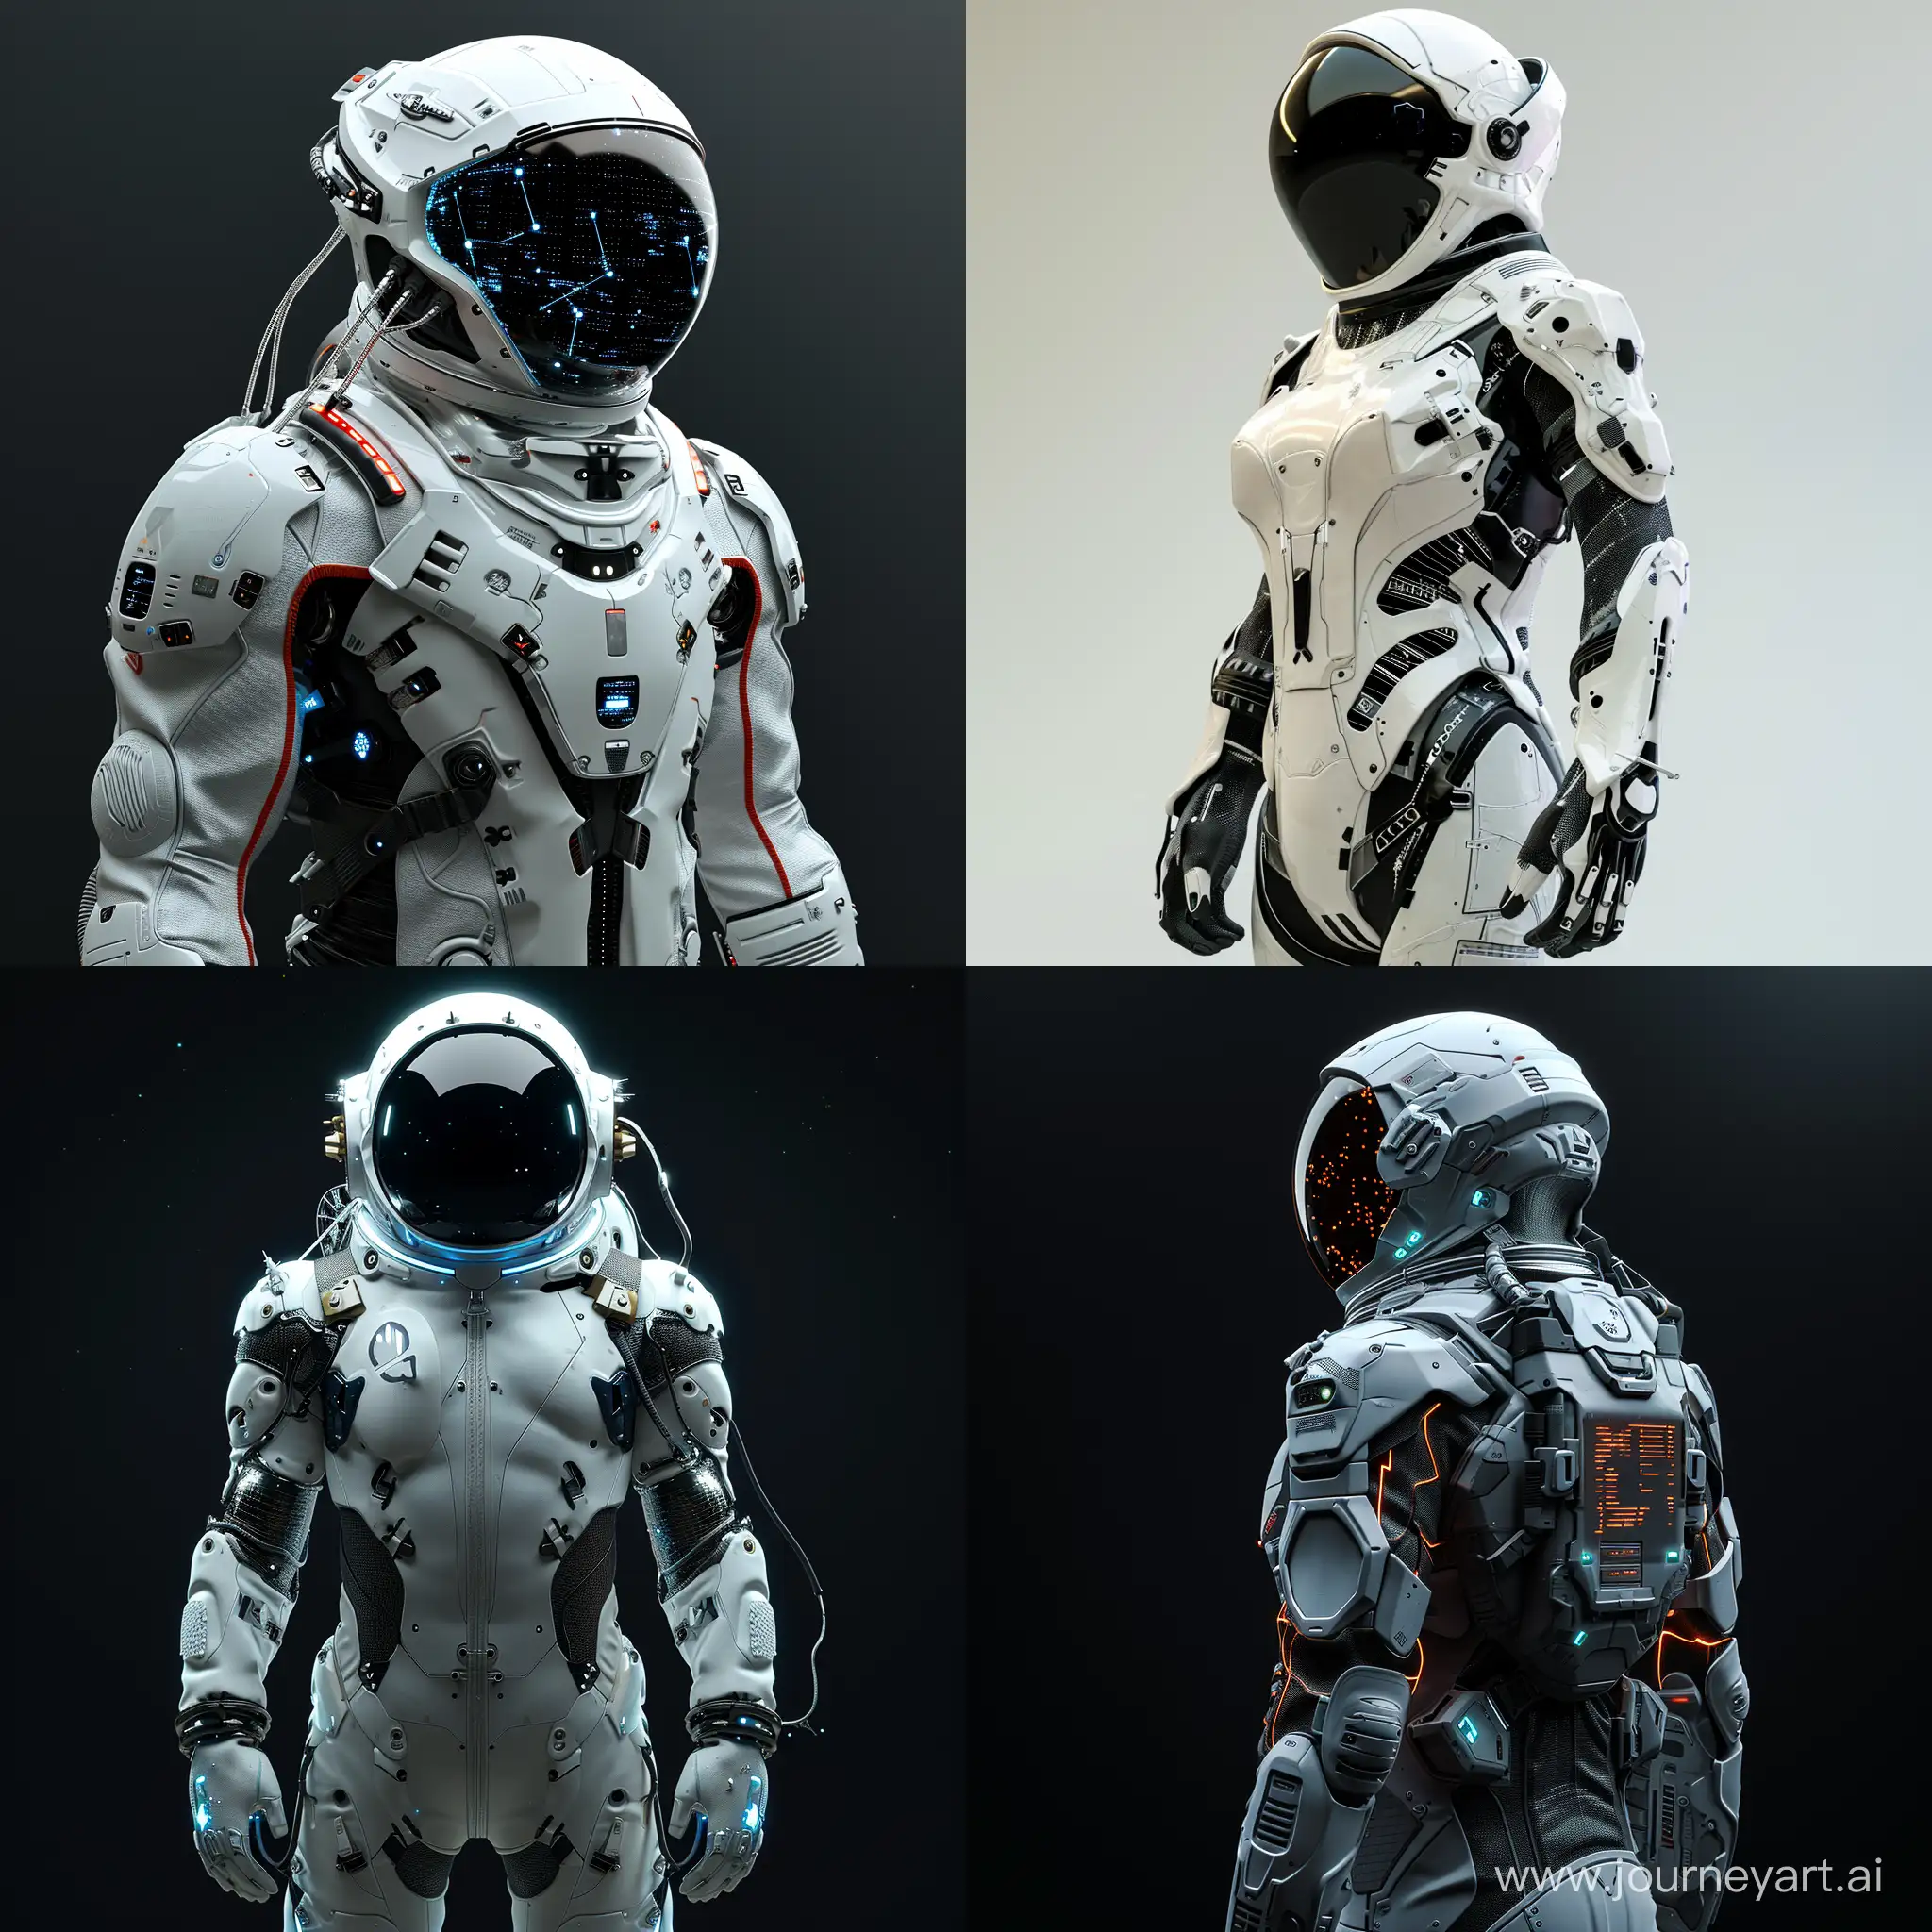 CuttingEdge-Nanotech-Space-Suit-in-Futuristic-Setting